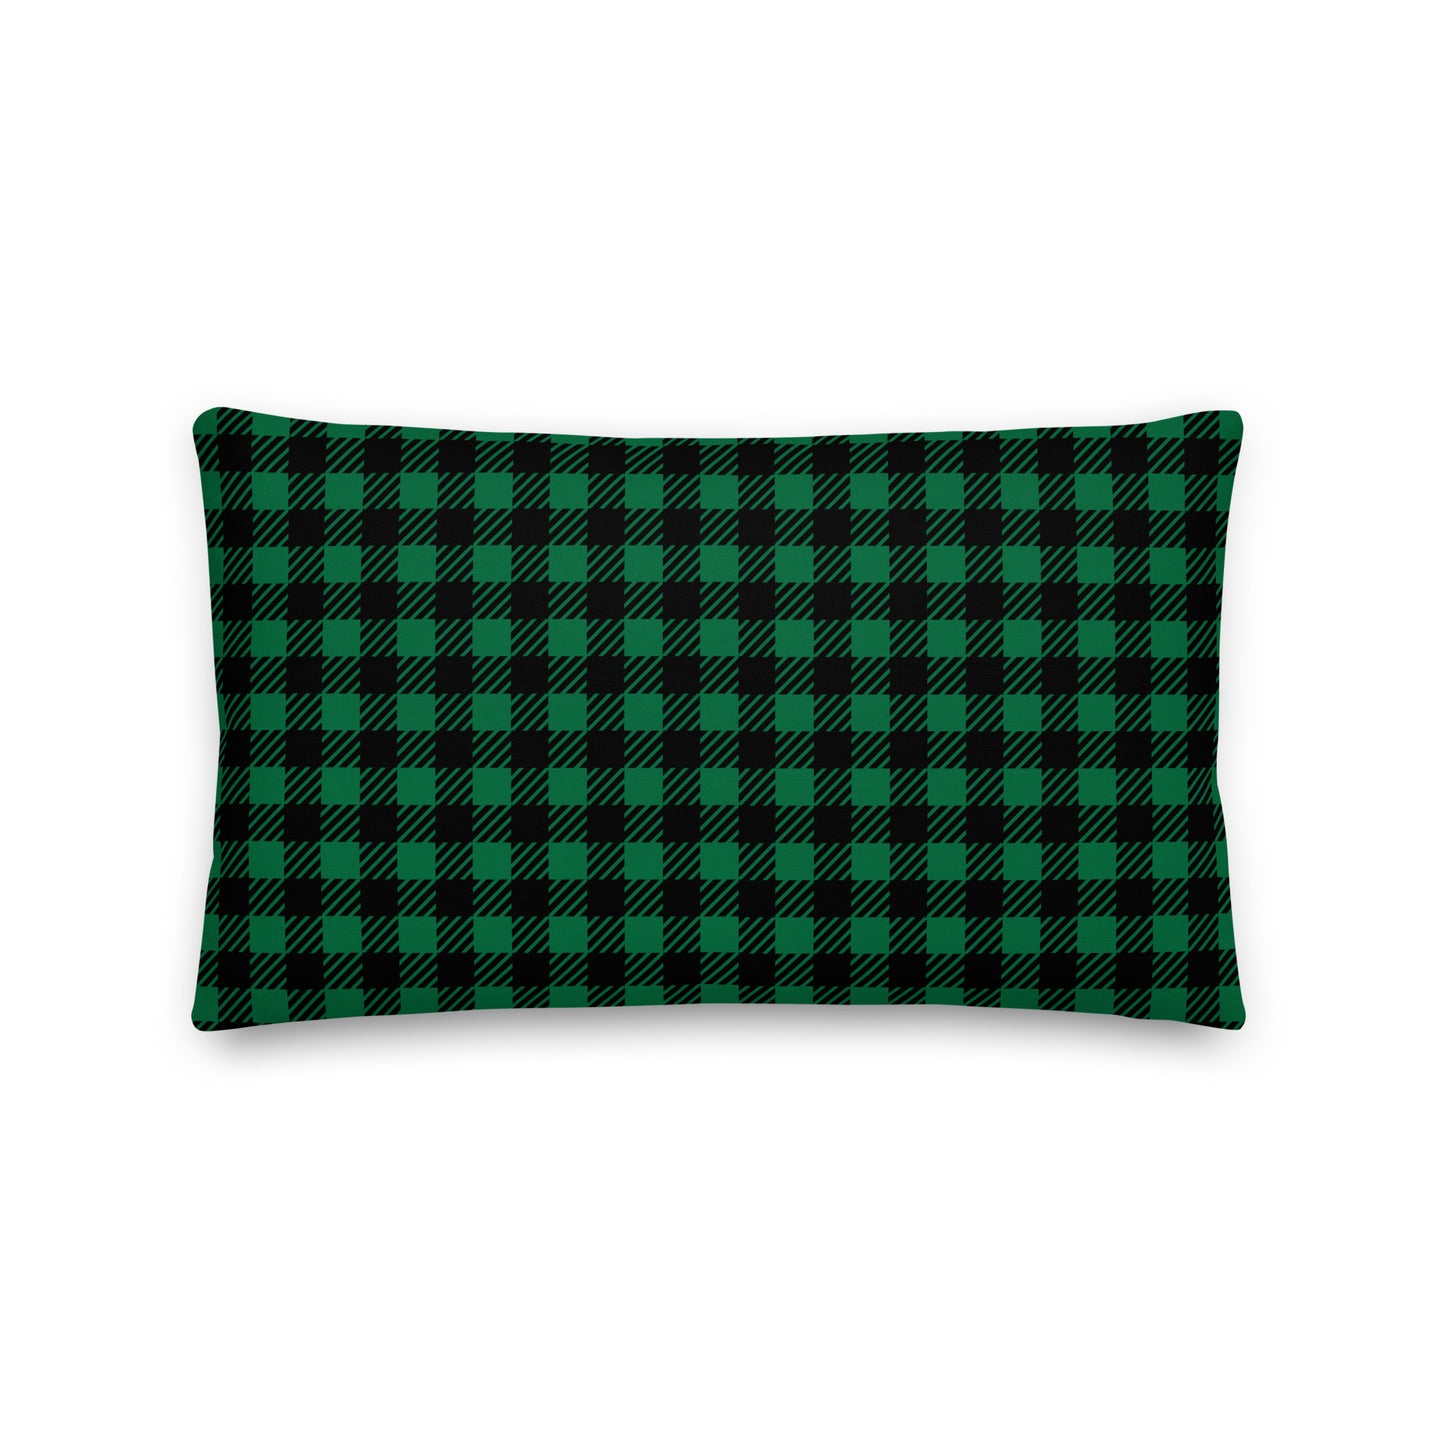 Farmhouse Throw Pillow - Buffalo Plaid • YEG Edmonton • YHM Designs - Image 02